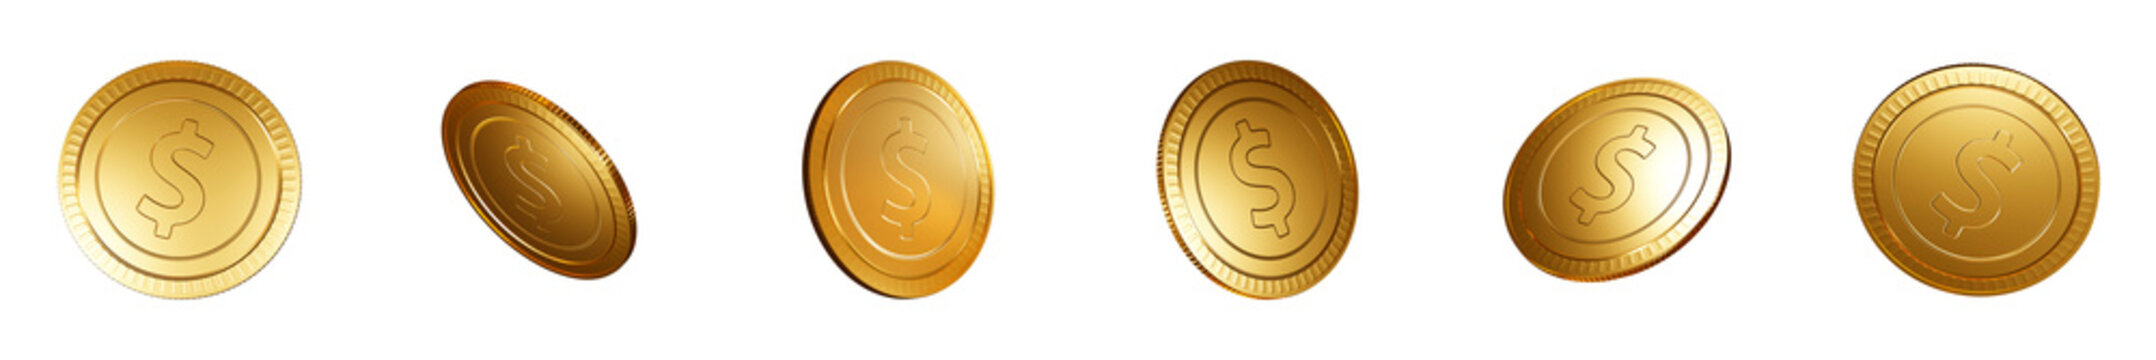 Dollar Gold Coins set PNG. Transparent background	
